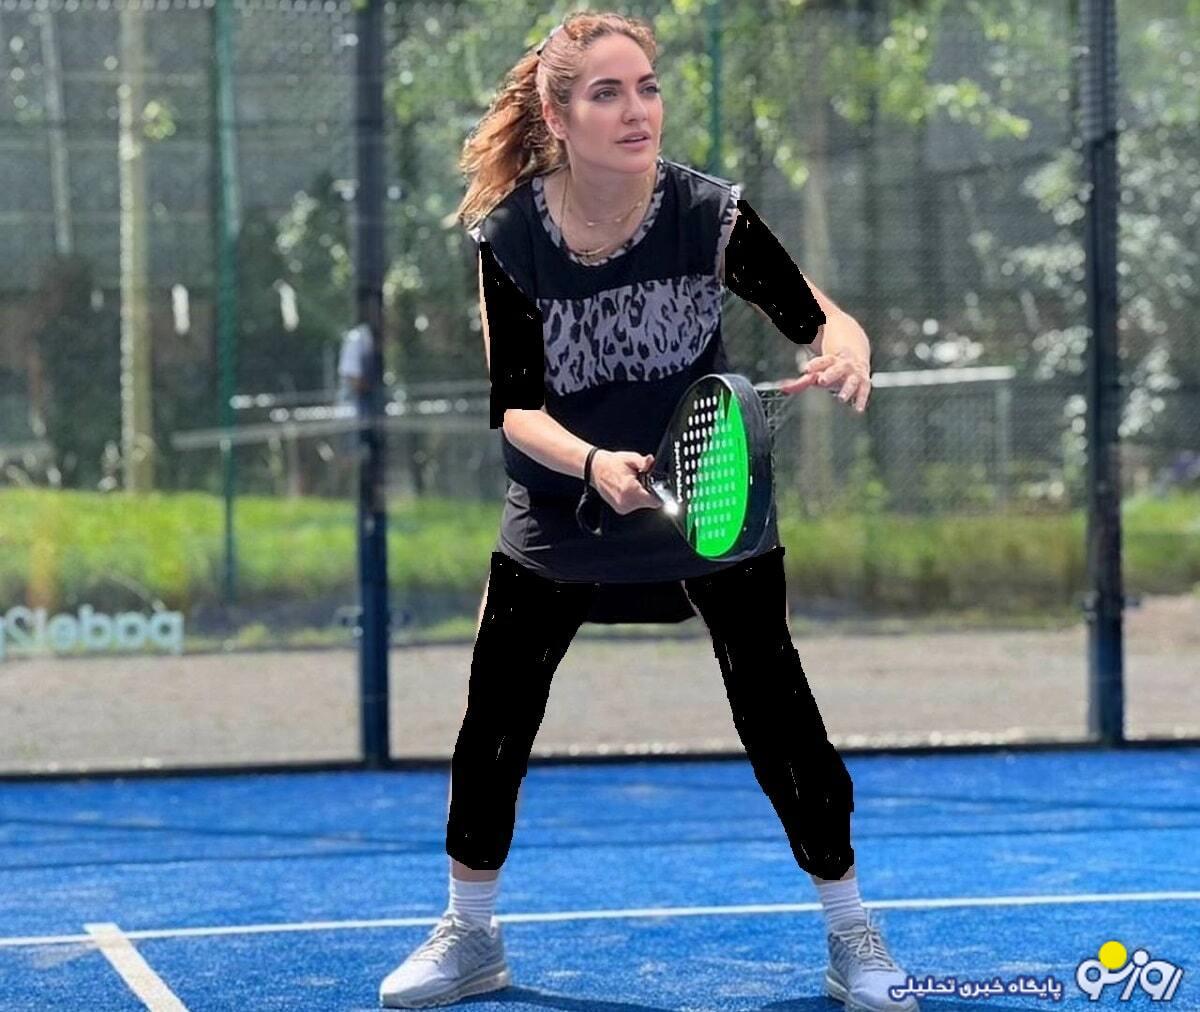 سوژه شدن استایل تنیس بازی کردن ناشیانه مهناز افشار /عکس